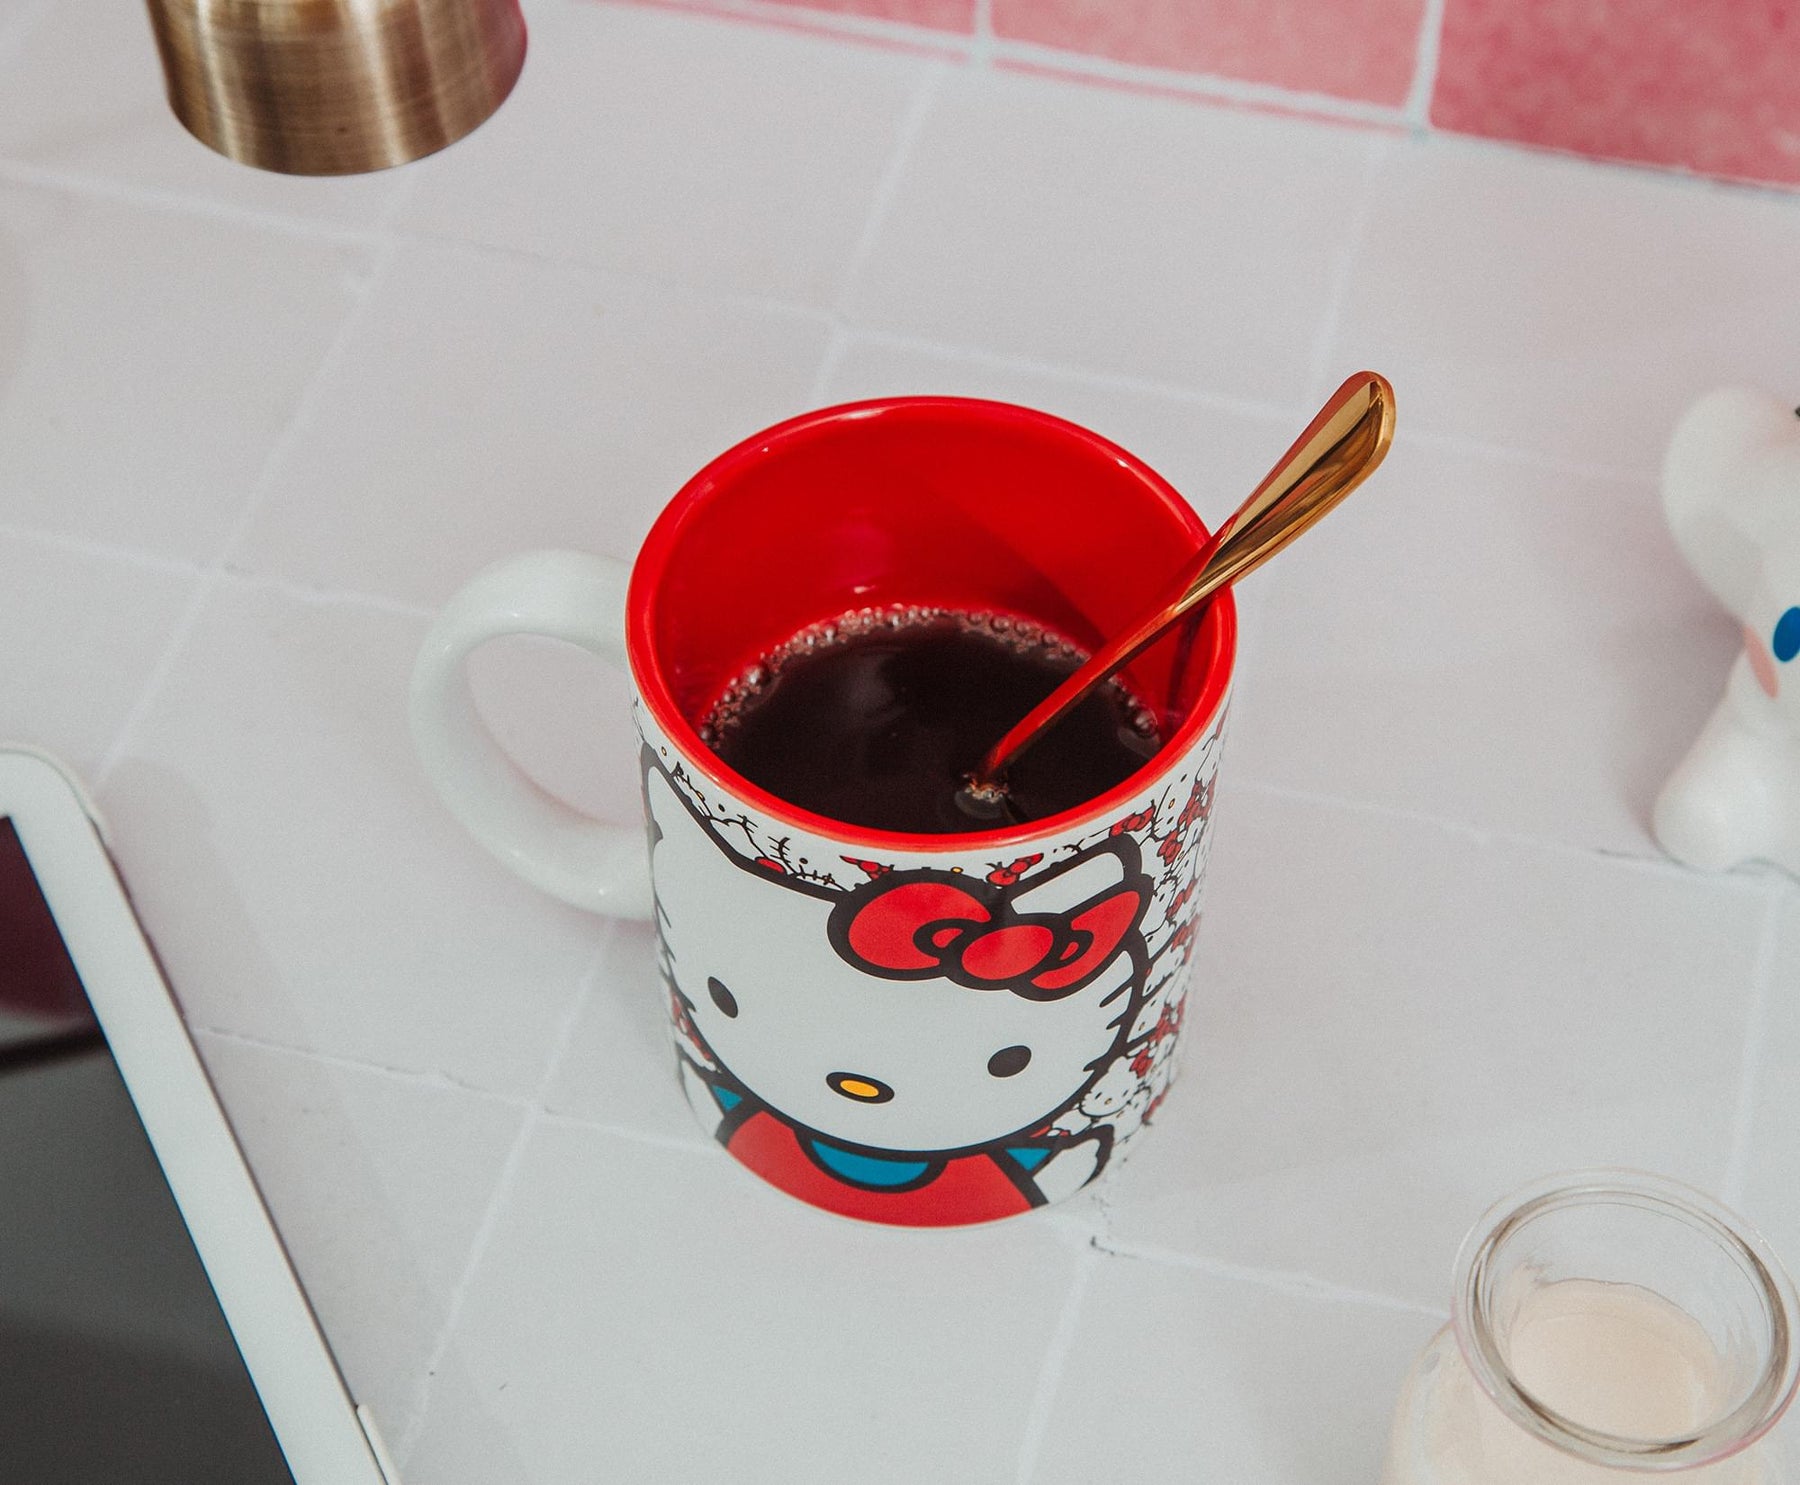 Sanrio Hello Kitty Allover Faces Ceramic Mug | Holds 20 Ounces